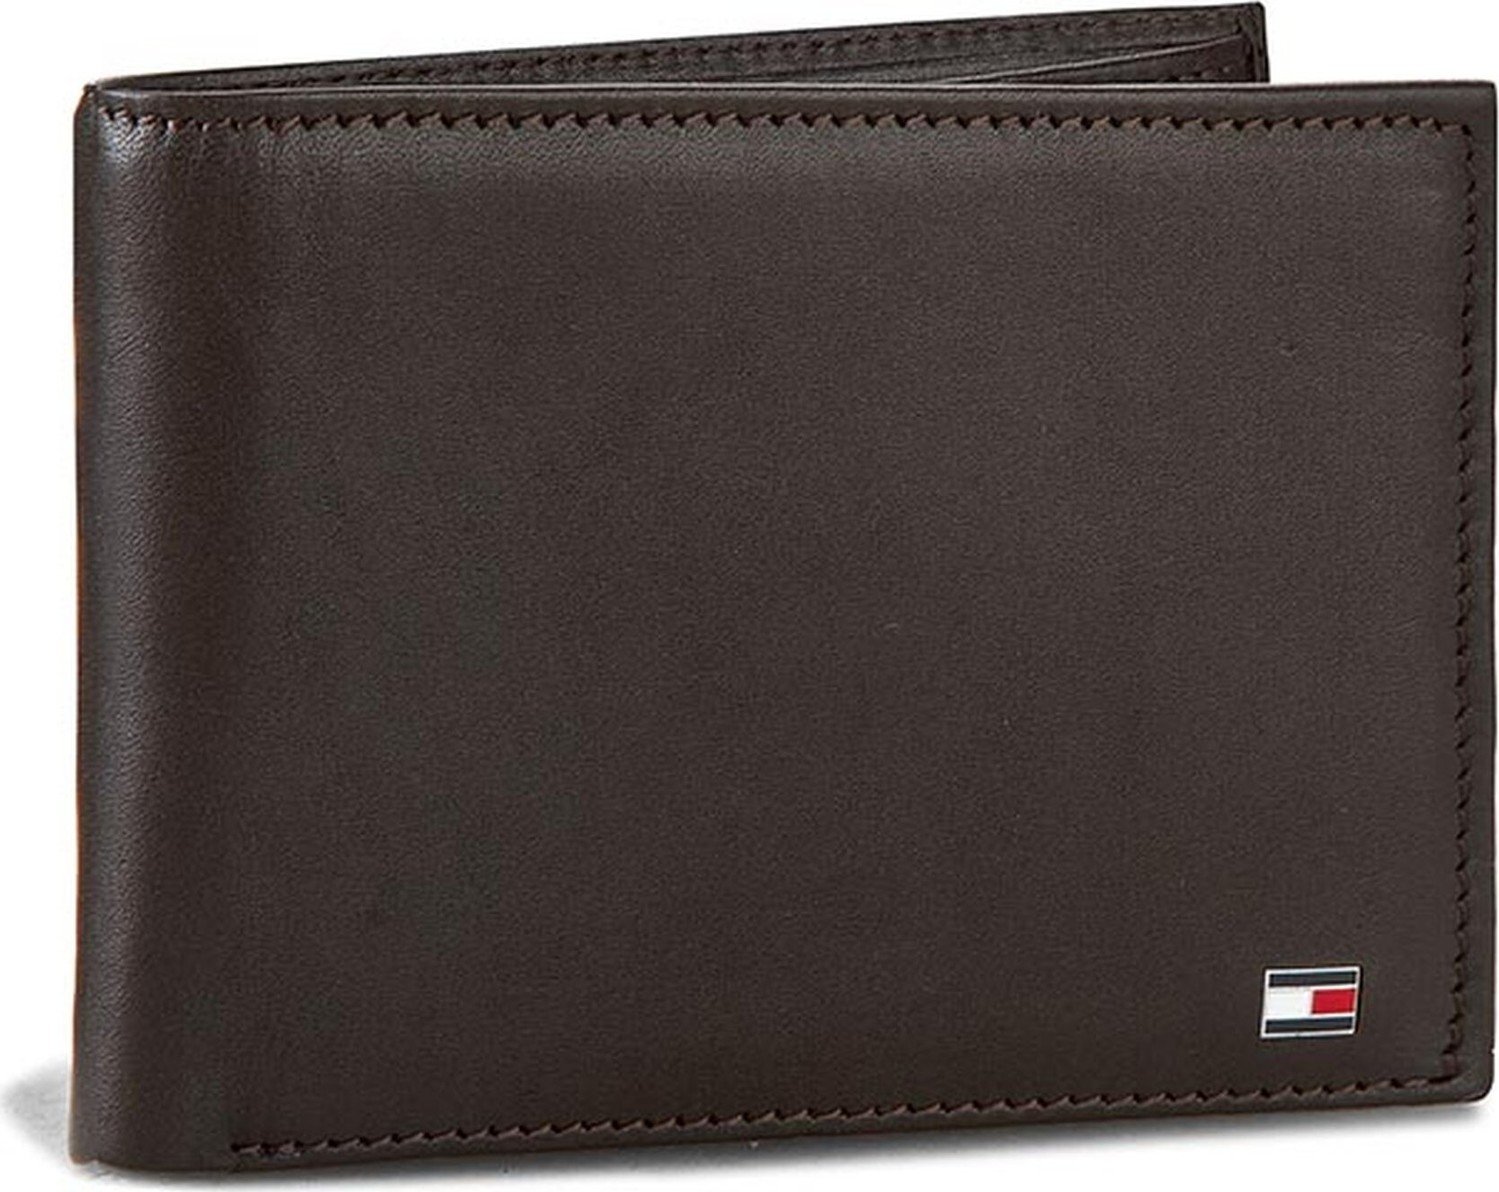 Velká pánská peněženka Tommy Hilfiger Eton Cc And Coin Pocket AM0AM00651/83361 041